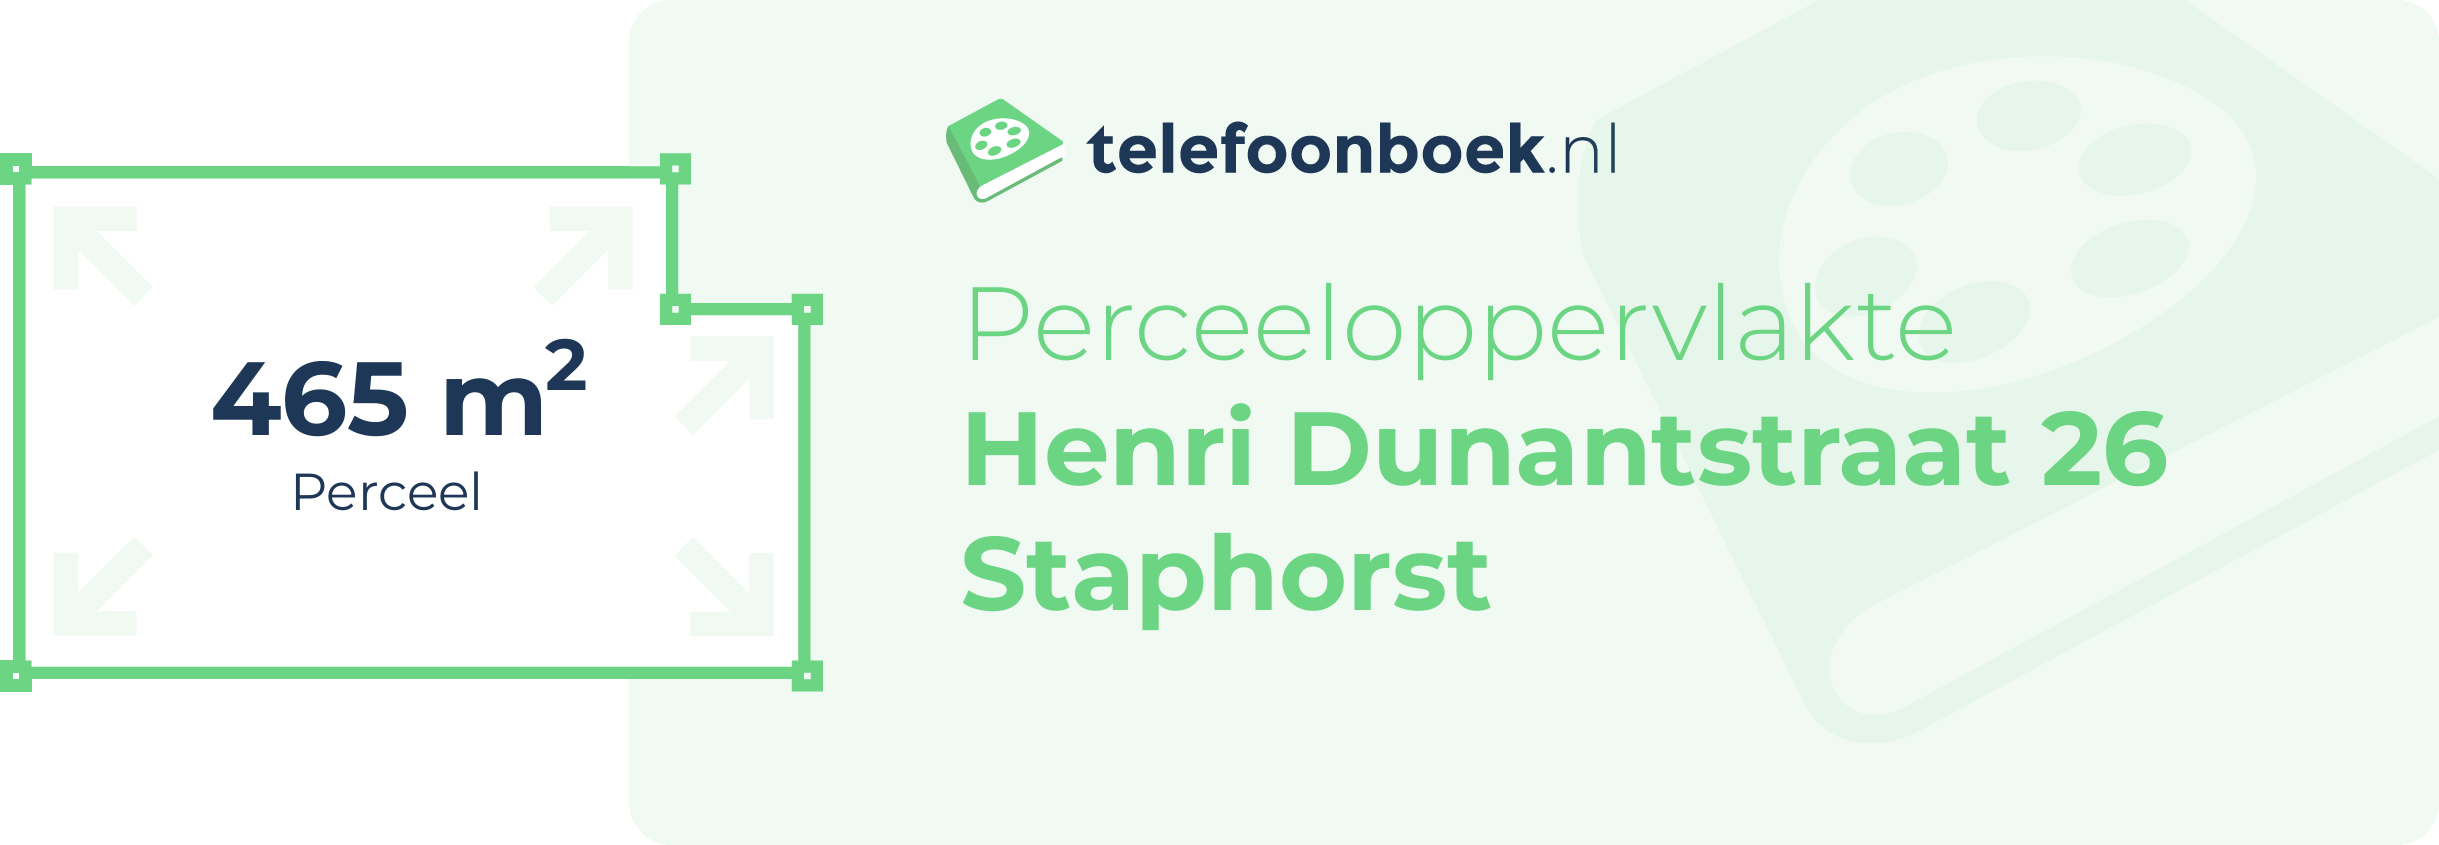 Perceeloppervlakte Henri Dunantstraat 26 Staphorst